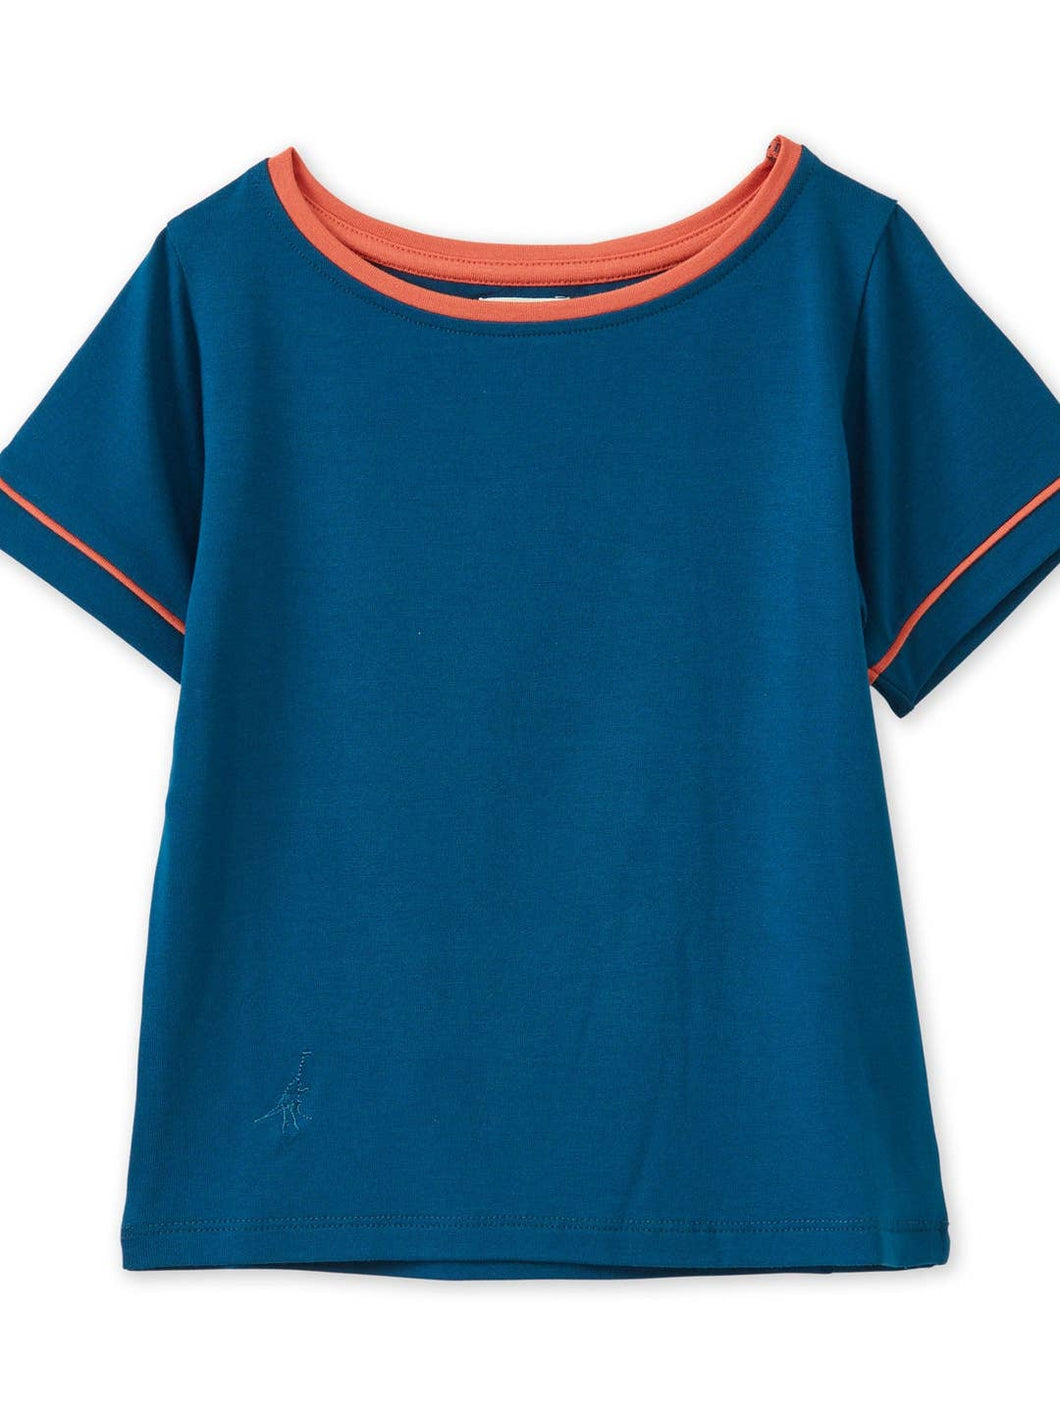 Vild Prussian blue t- shirt (SZ 1- 6y)